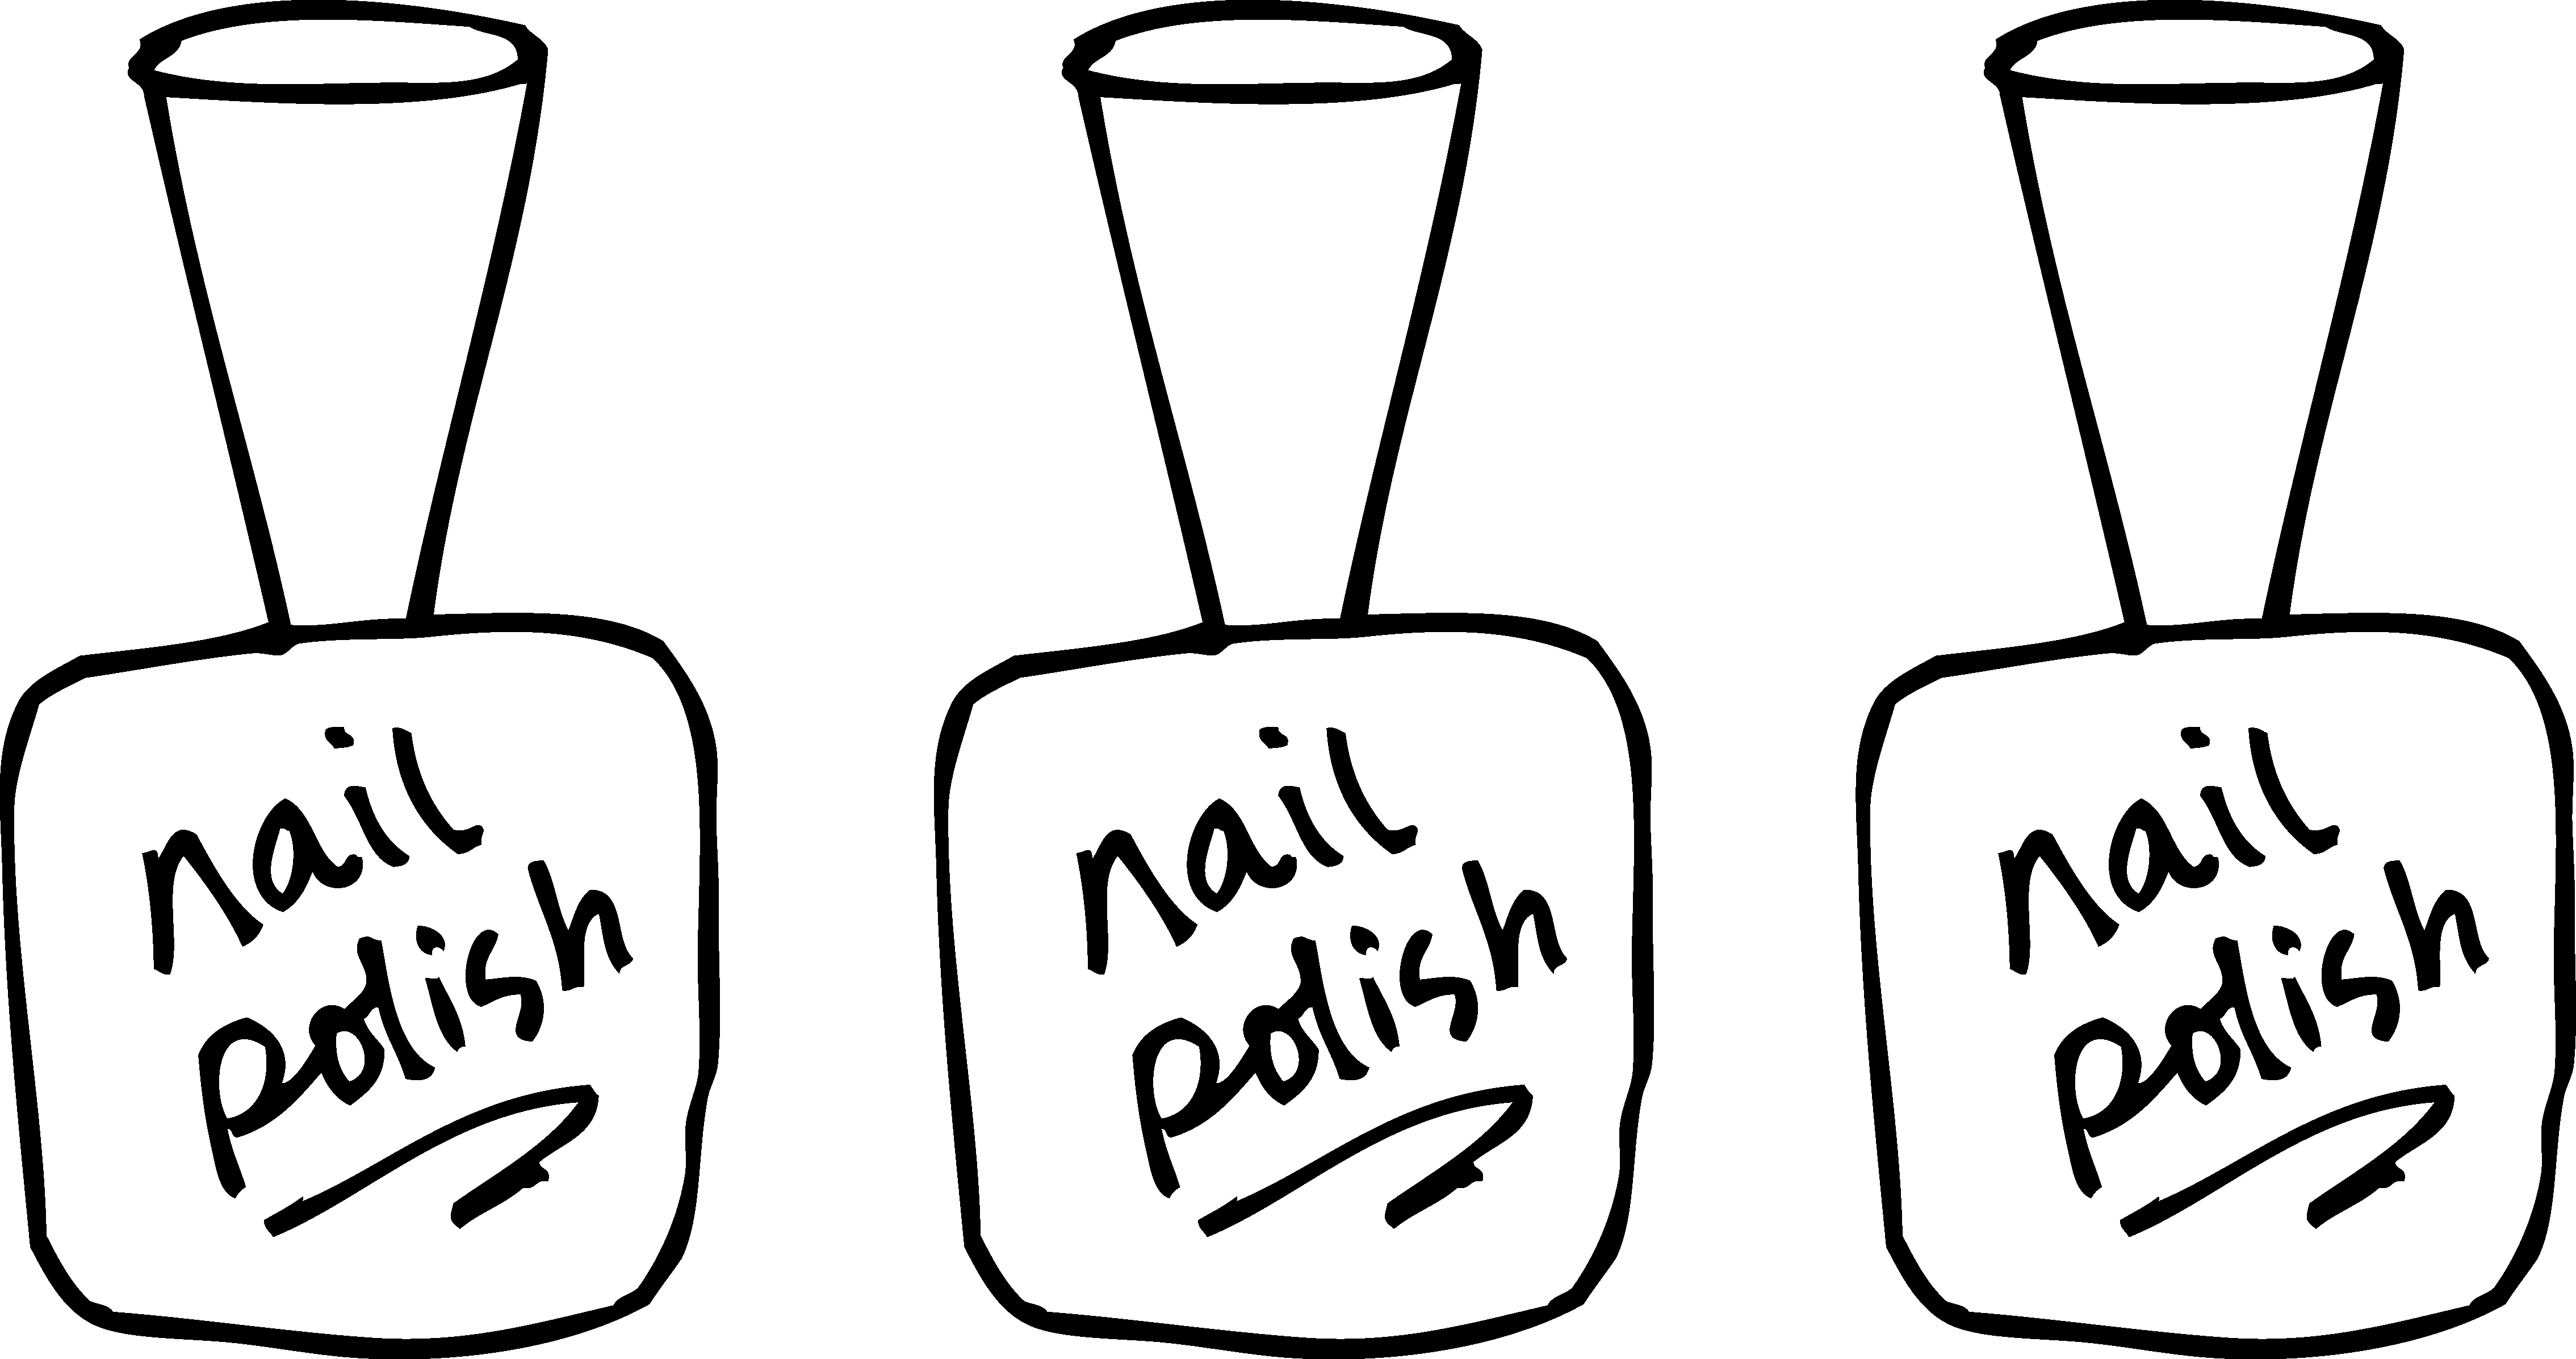 4. Thermal Nail Polish - wide 5